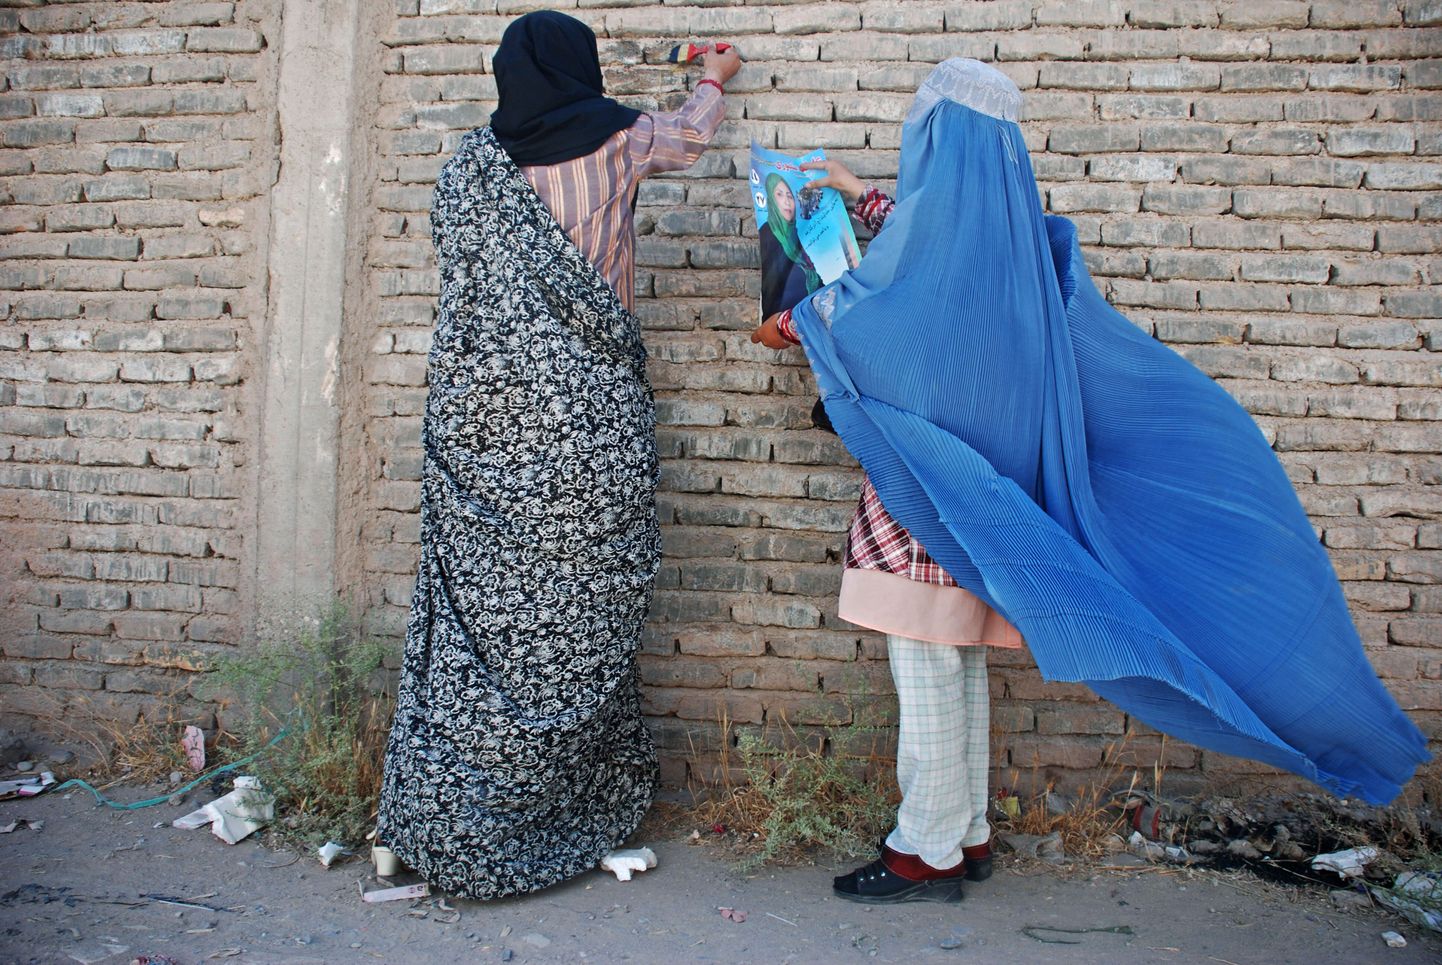 Afgaani naised kleepimas seinale parlamenti pürgiva poliitiku plakatit.